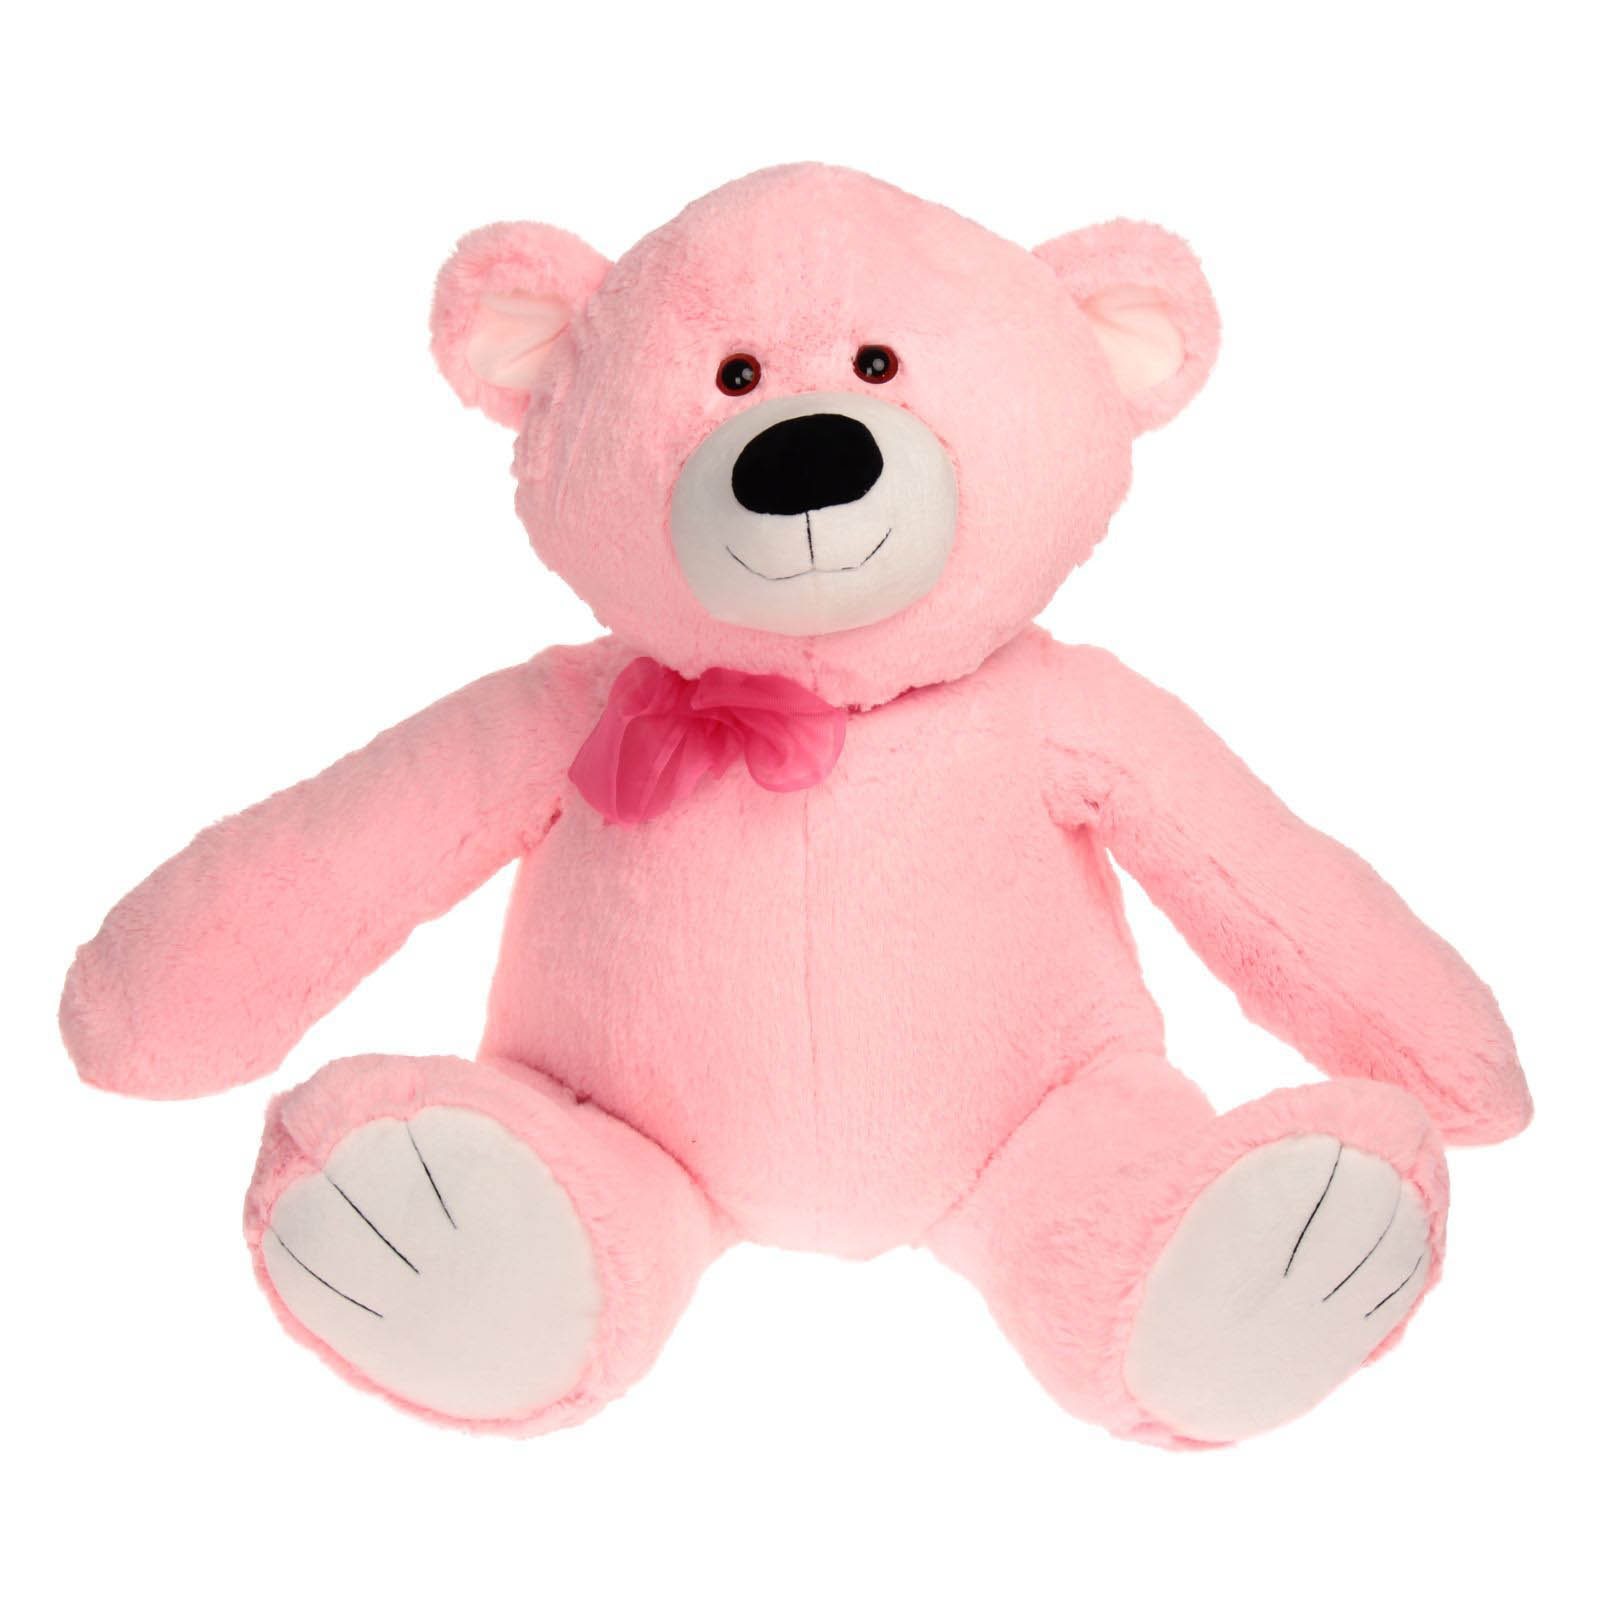 Розовый мишка игрушка. Мишка плюшевый 80 см (розовый). Мягкая игрушка мишка Trudi. Мягкая игрушка Медвежонок розовый. Мягкая игрушка розовый медведь.